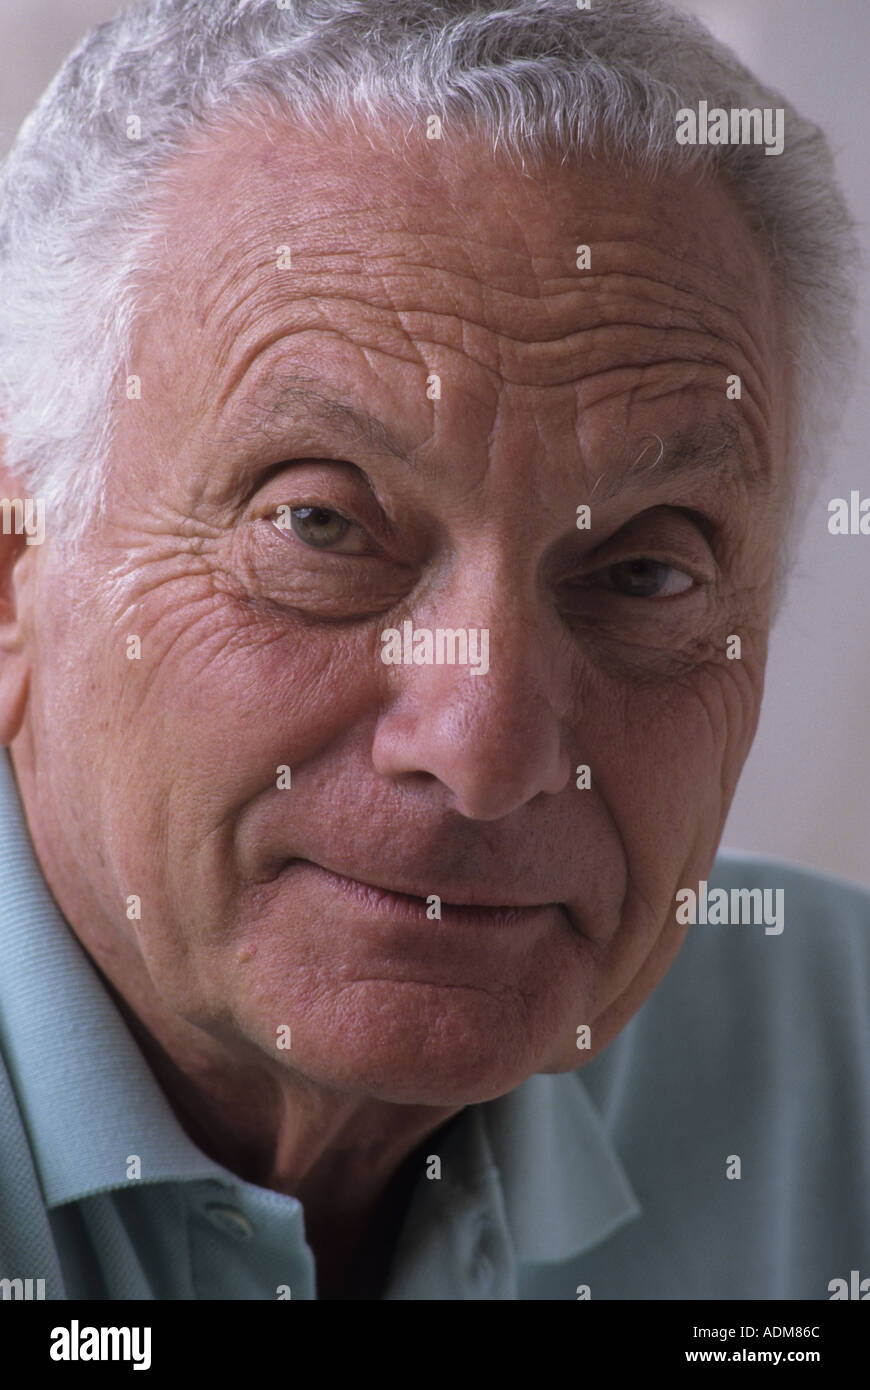 Close up ritratto di un uomo anziano nei suoi anni settanta 70s 73-75 anni faccia onesta espressione ritratto espressive rughe healthy white capelli grigi Foto Stock